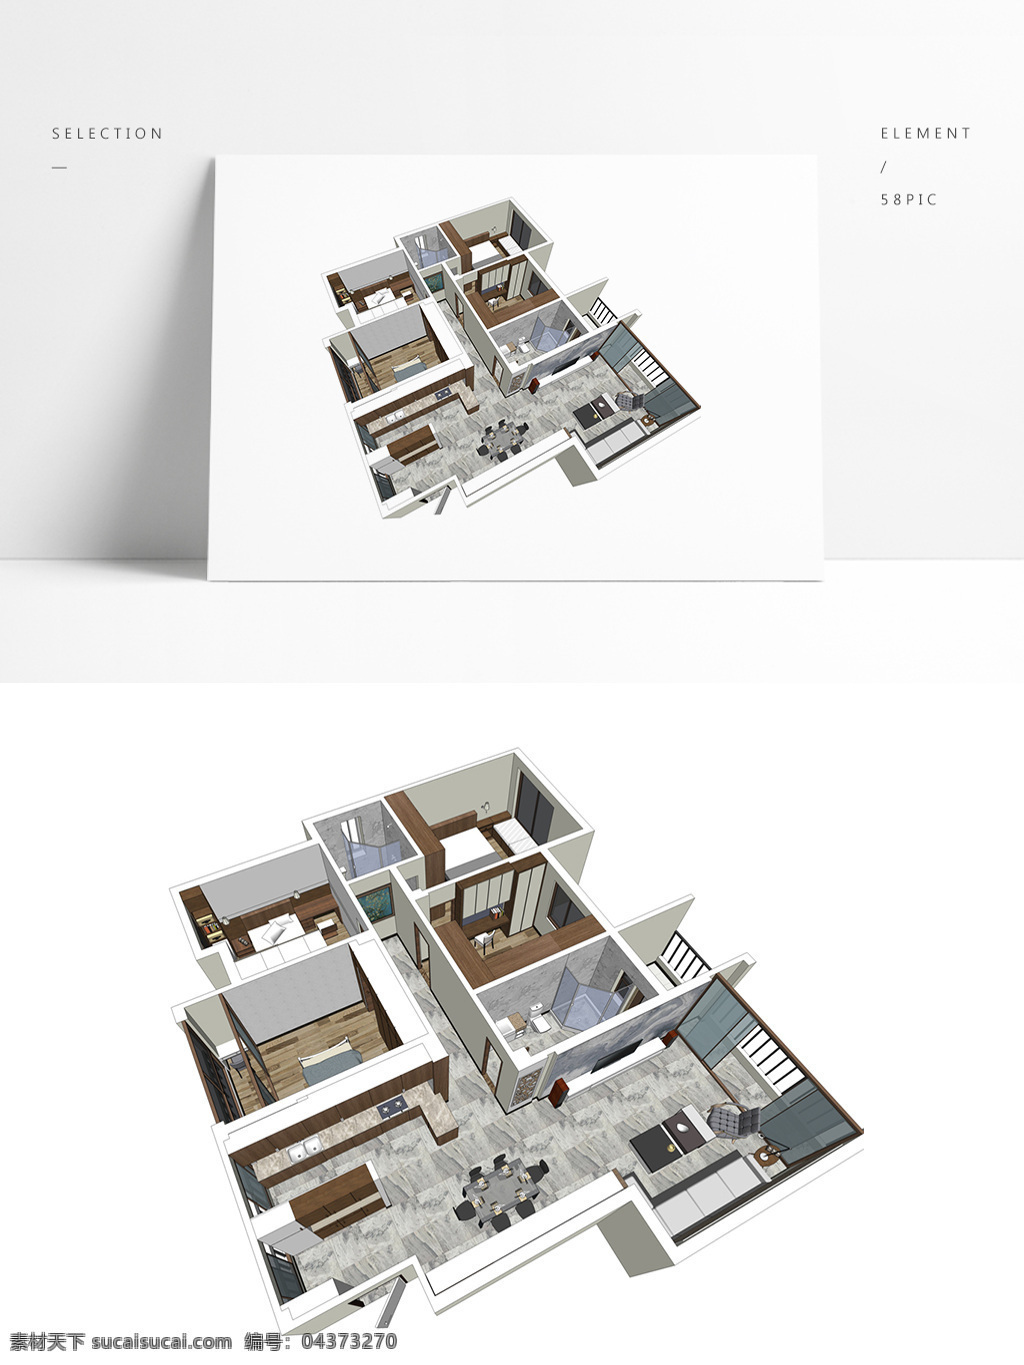 三居室 户型 草图 大师 全景 模型 室内空间设计 住宅室内设计 样板房 透视 3d模型 su模型 草图大师模型 家具模型 全景模型